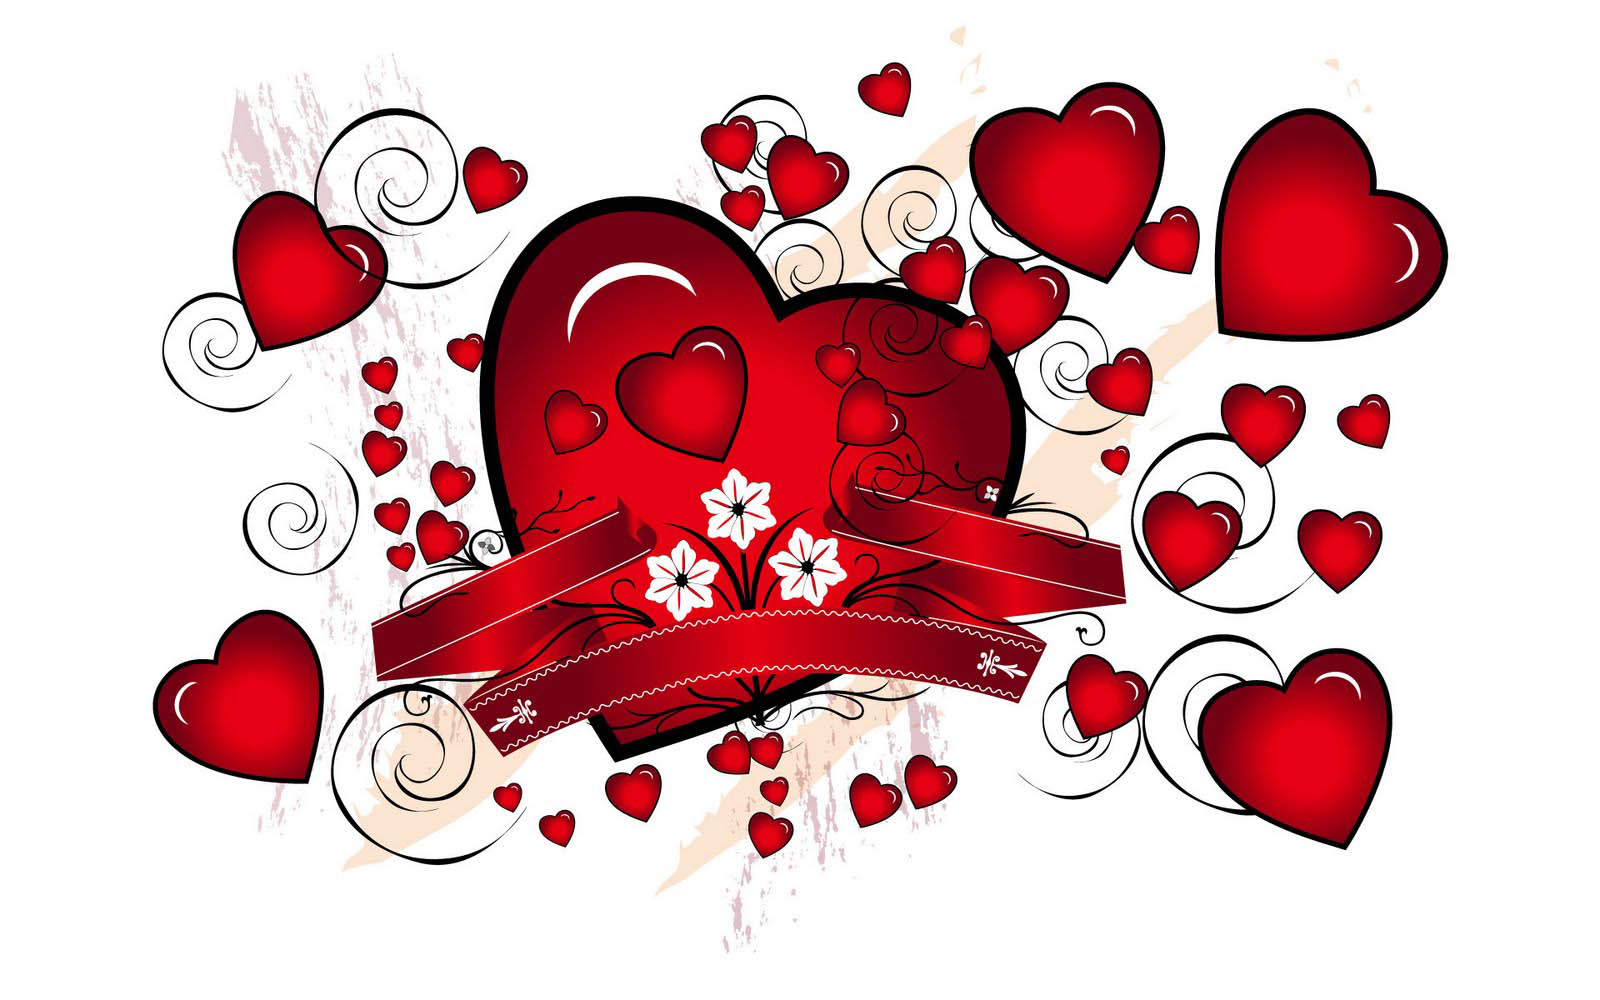 메시지와 함께 사랑 배경 화면,심장,빨간,사랑,발렌타인 데이,심장